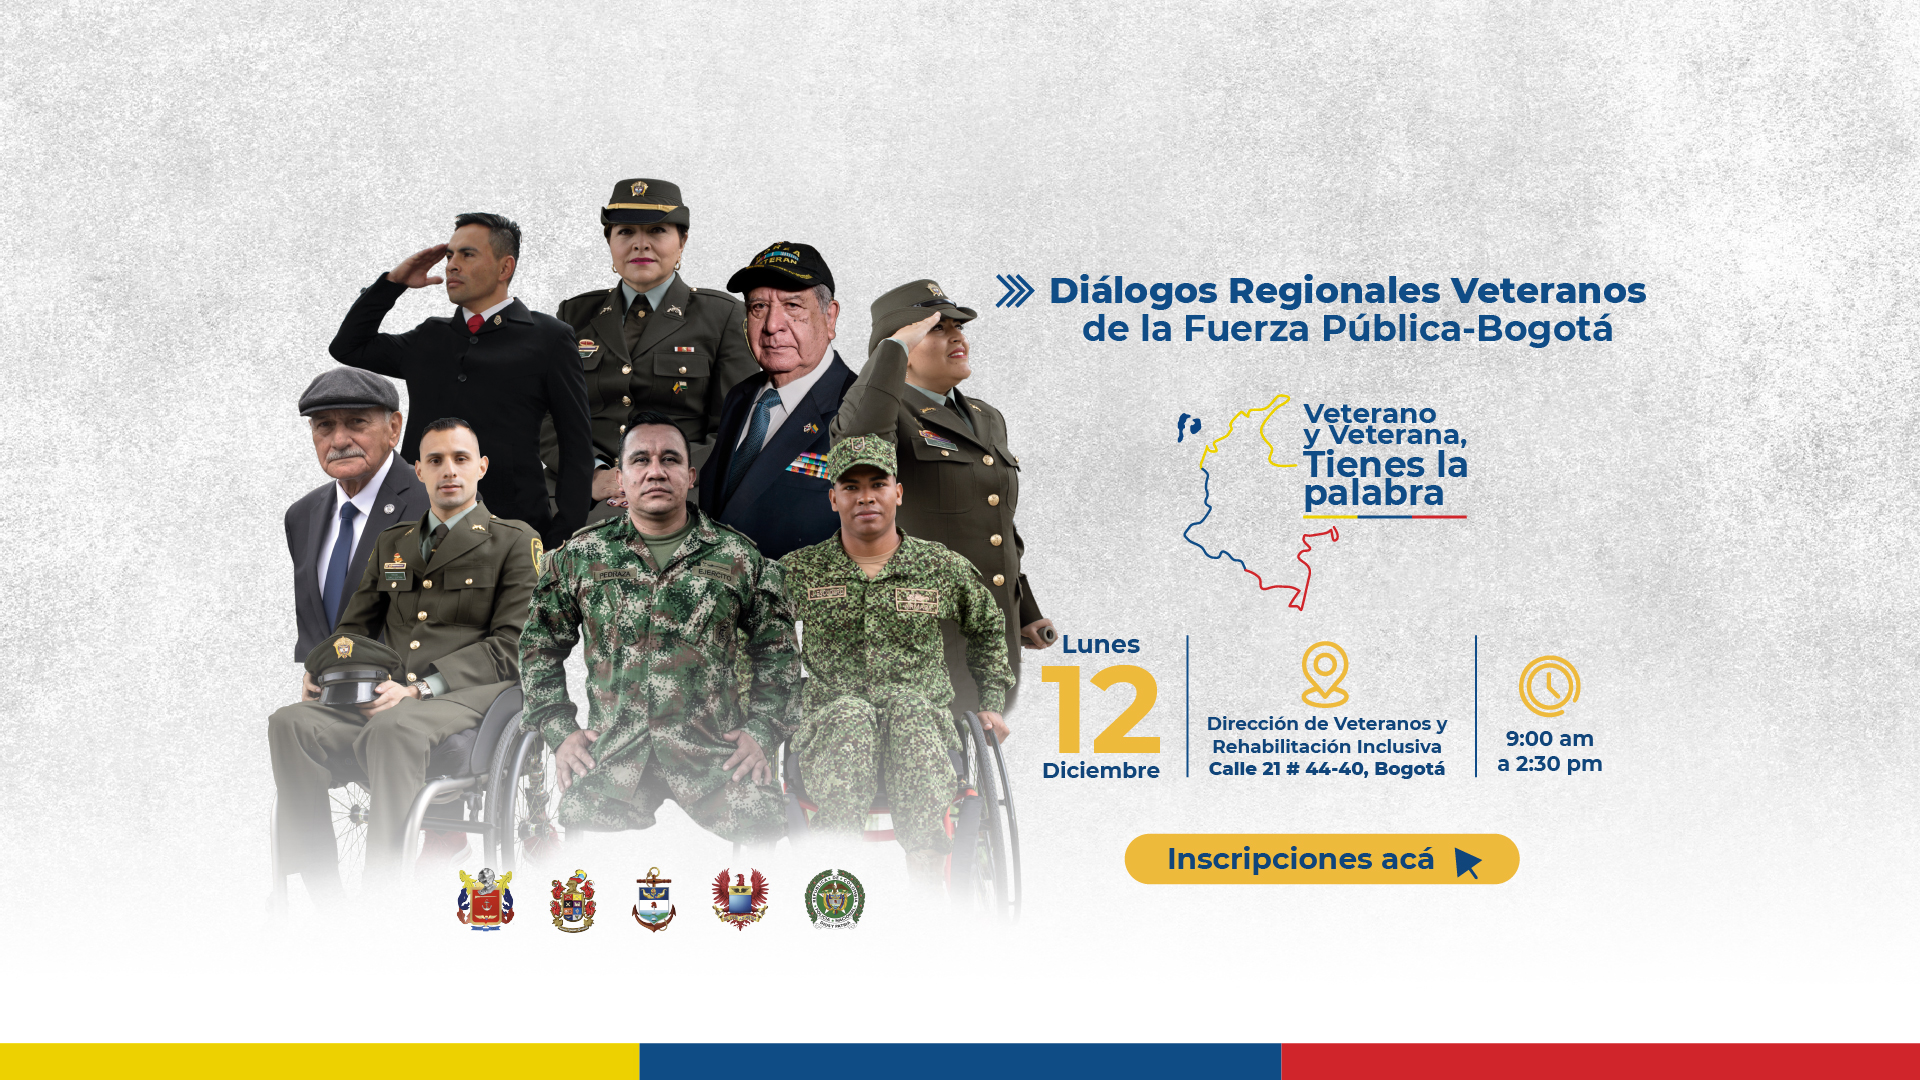 Diálogos Regionales Veteranos de la Fuerza Pública - Bogotá